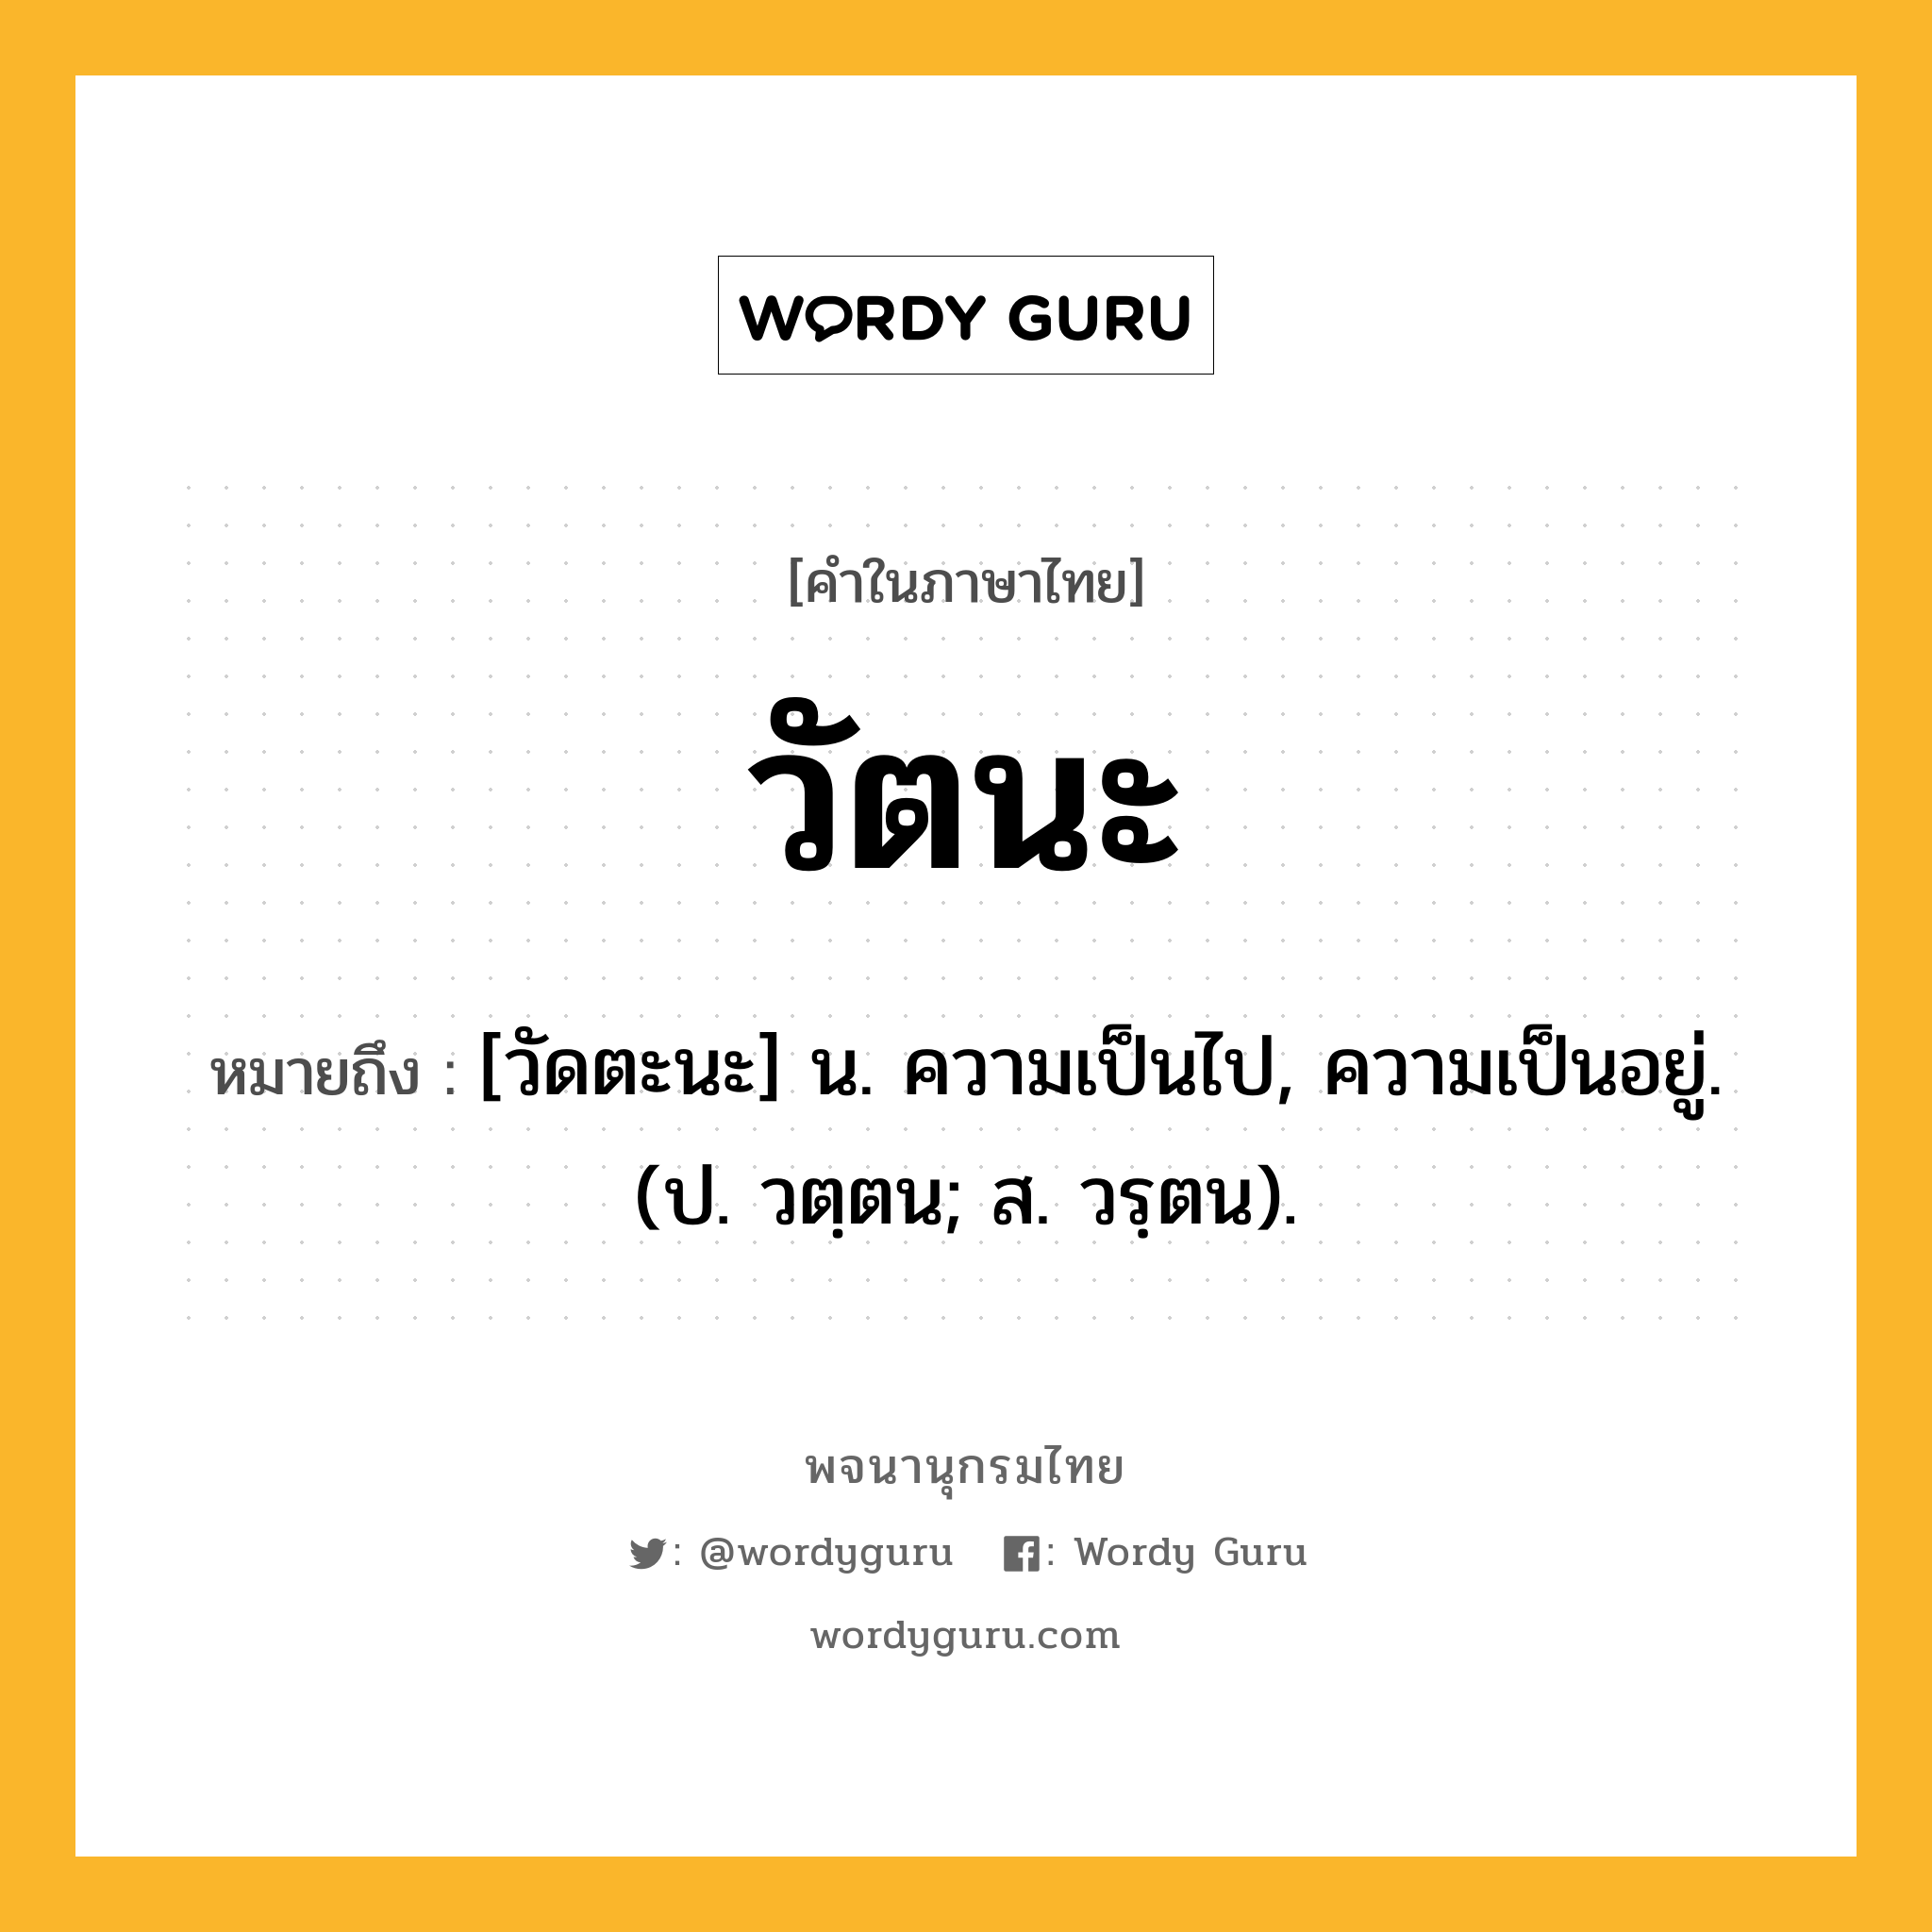 วัตนะ ความหมาย หมายถึงอะไร?, คำในภาษาไทย วัตนะ หมายถึง [วัดตะนะ] น. ความเป็นไป, ความเป็นอยู่. (ป. วตฺตน; ส. วรฺตน).